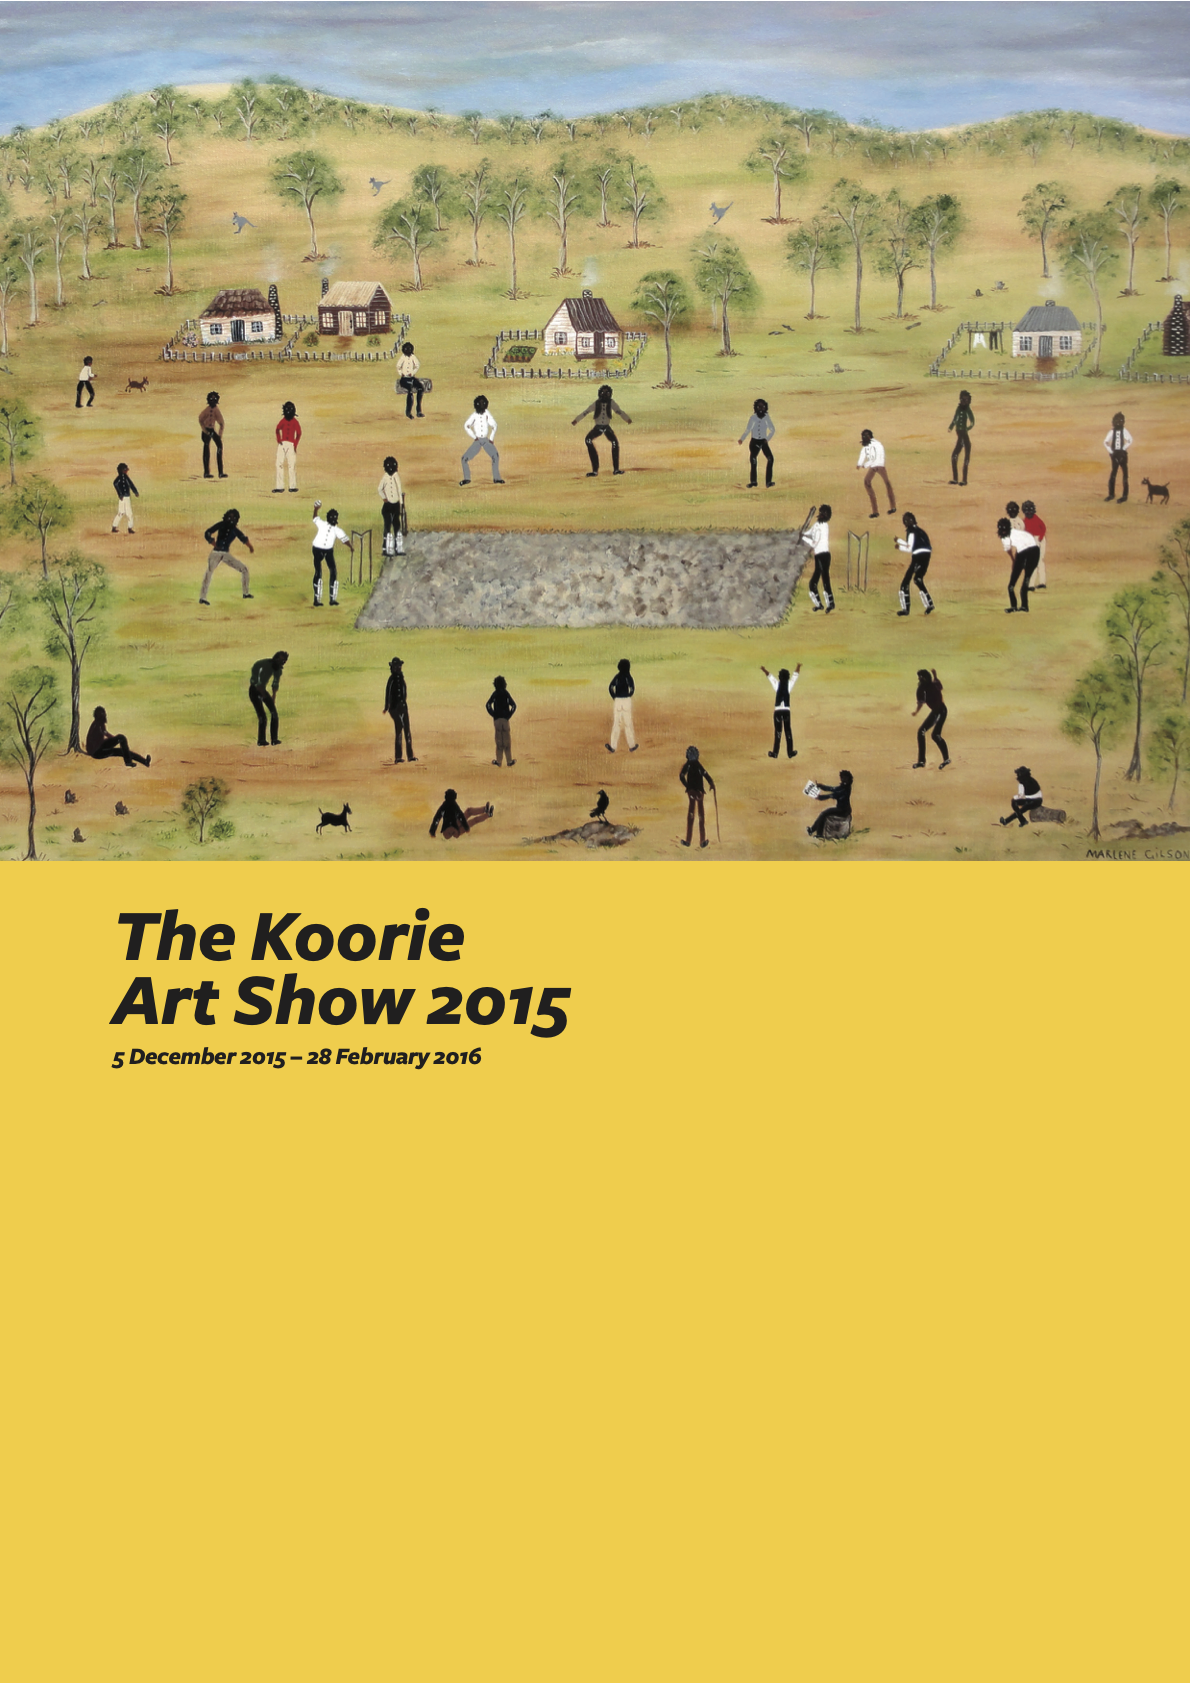 The Koorie Art Show 2015